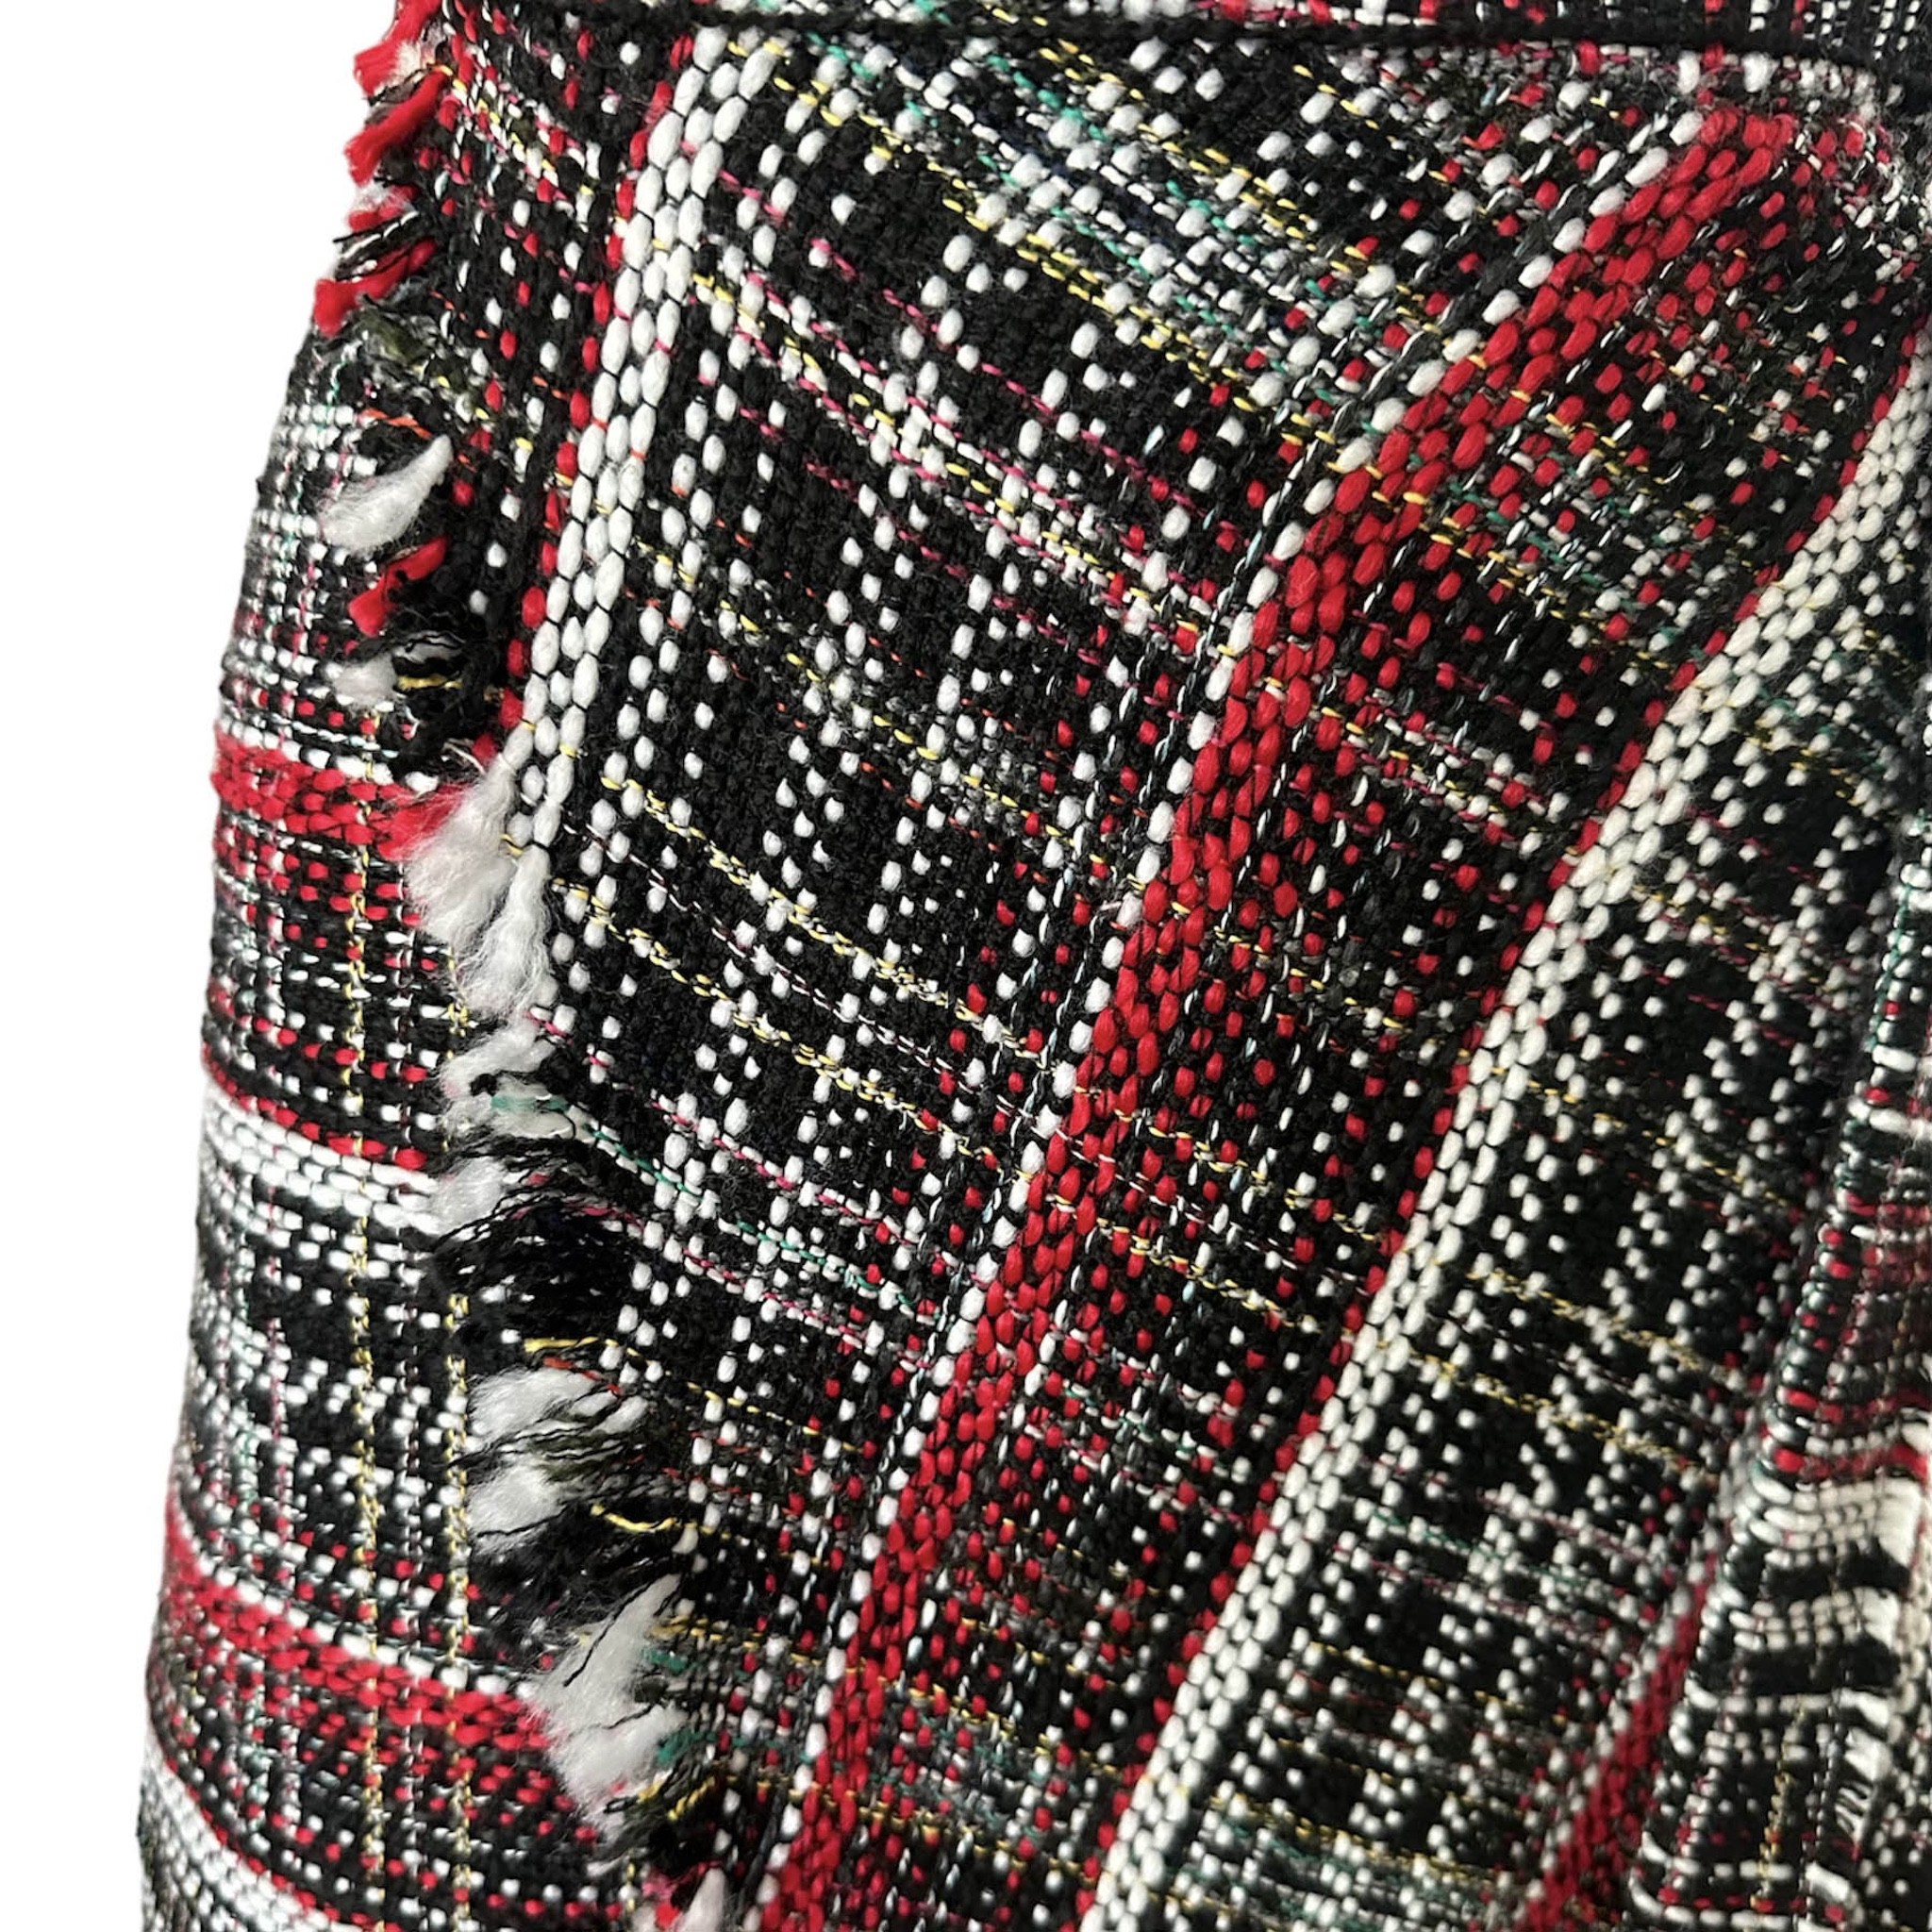 Tweed wrap skirt